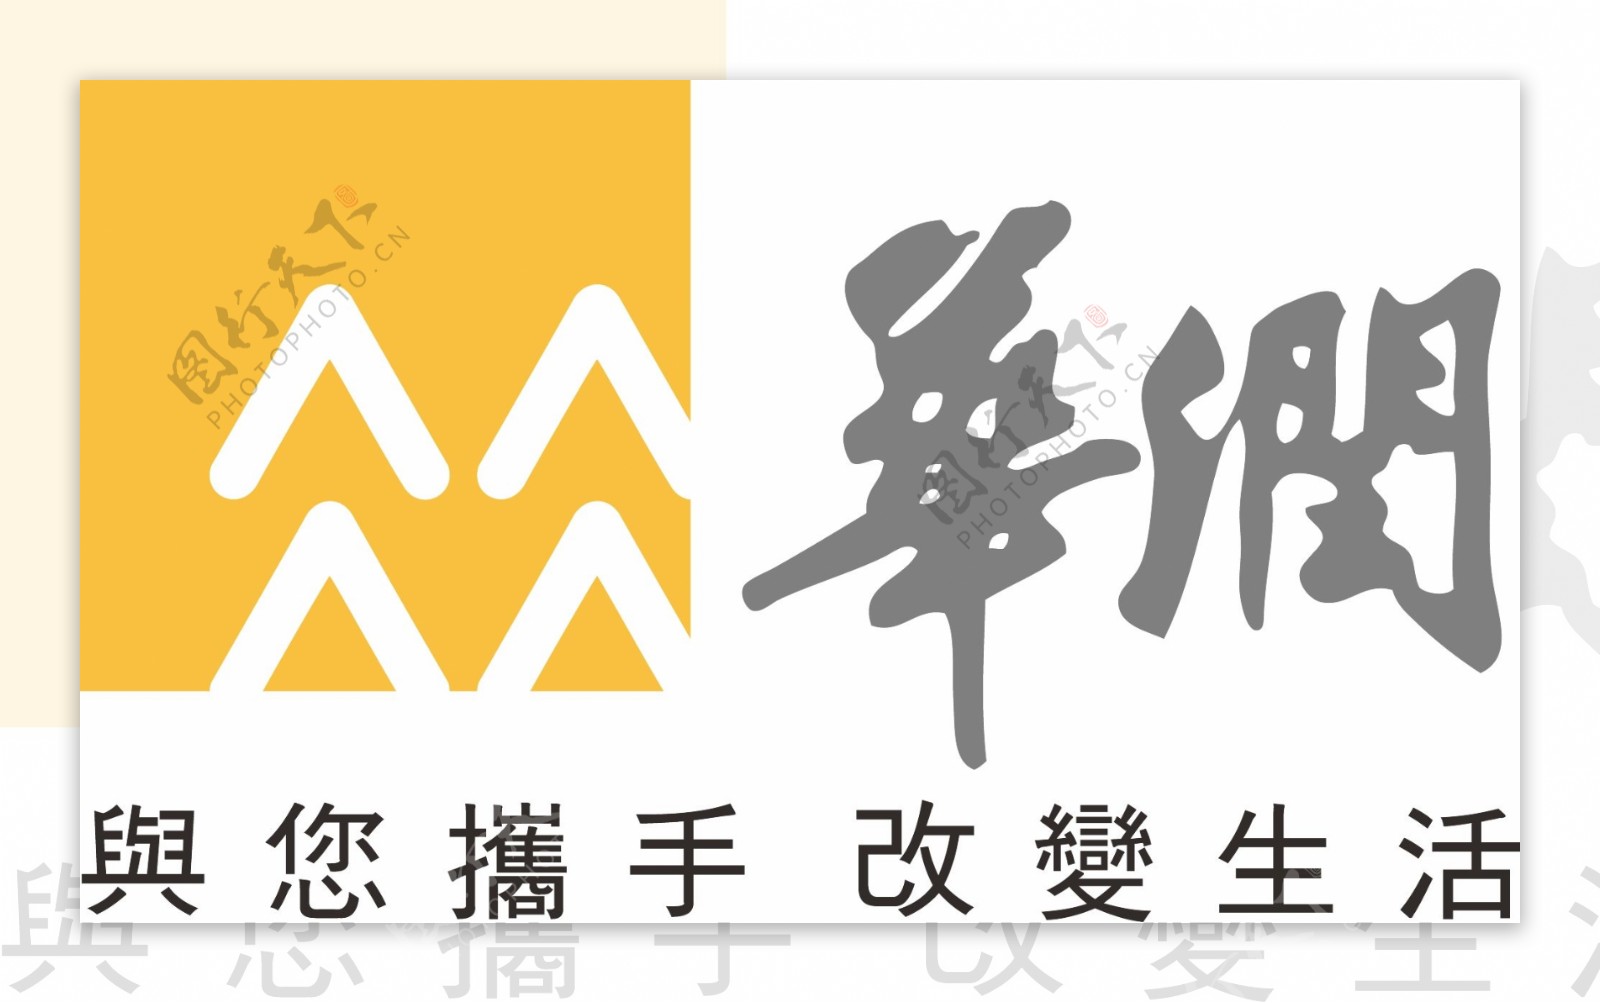 华润银行logo